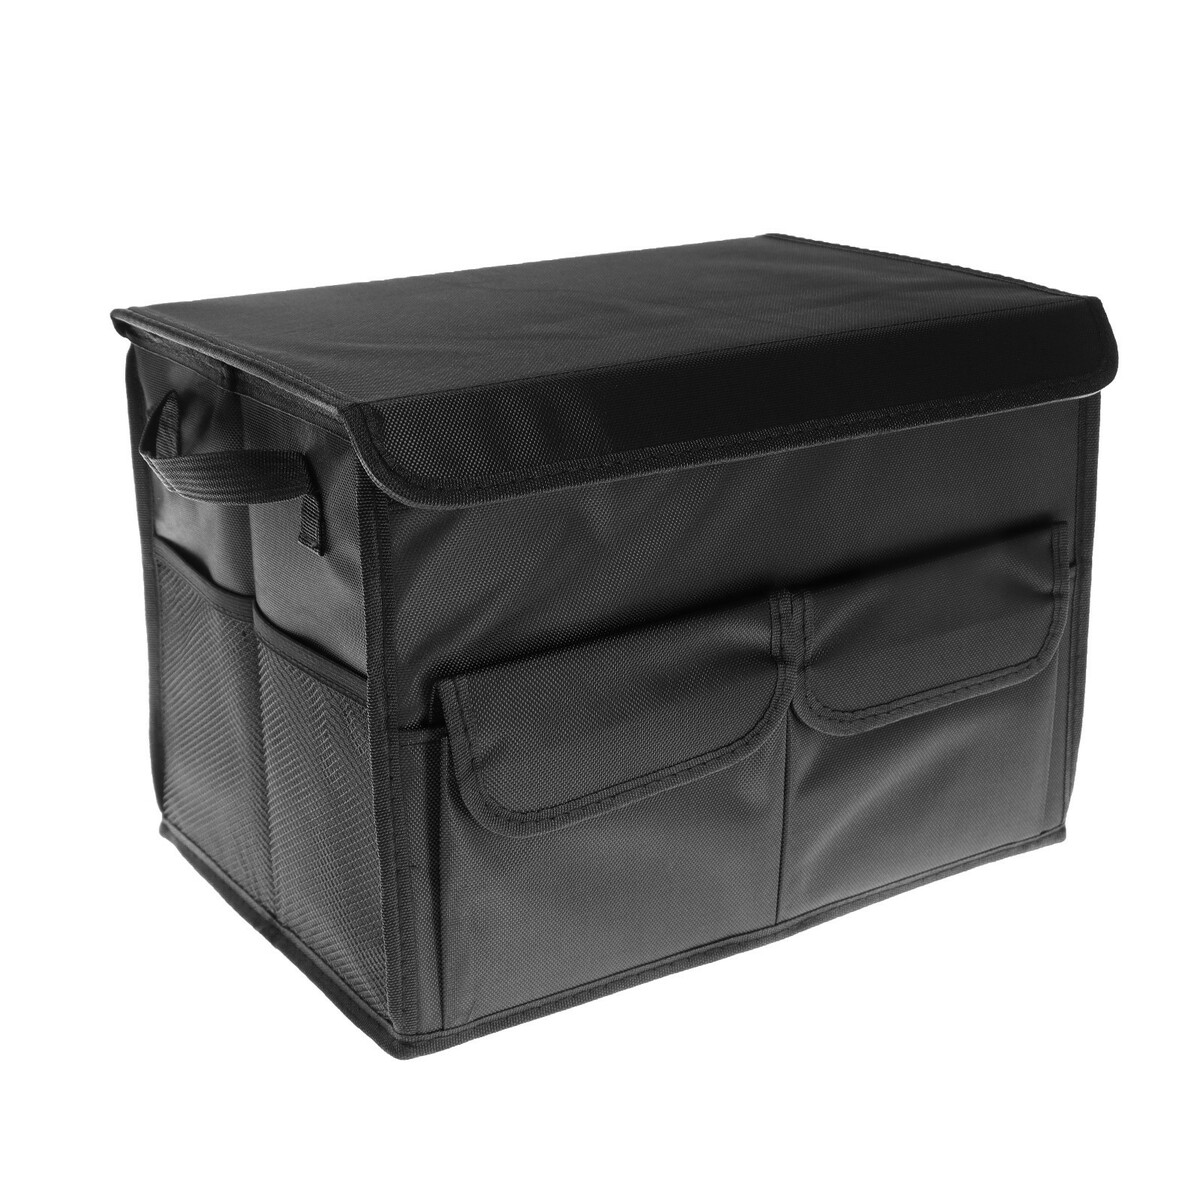 Органайзер в багажник автомобиля, складной, 22 л, 35×25×25 см, оксфорд органайзер саквояж в багажник автомобиля из eva материала 70 см серый кант